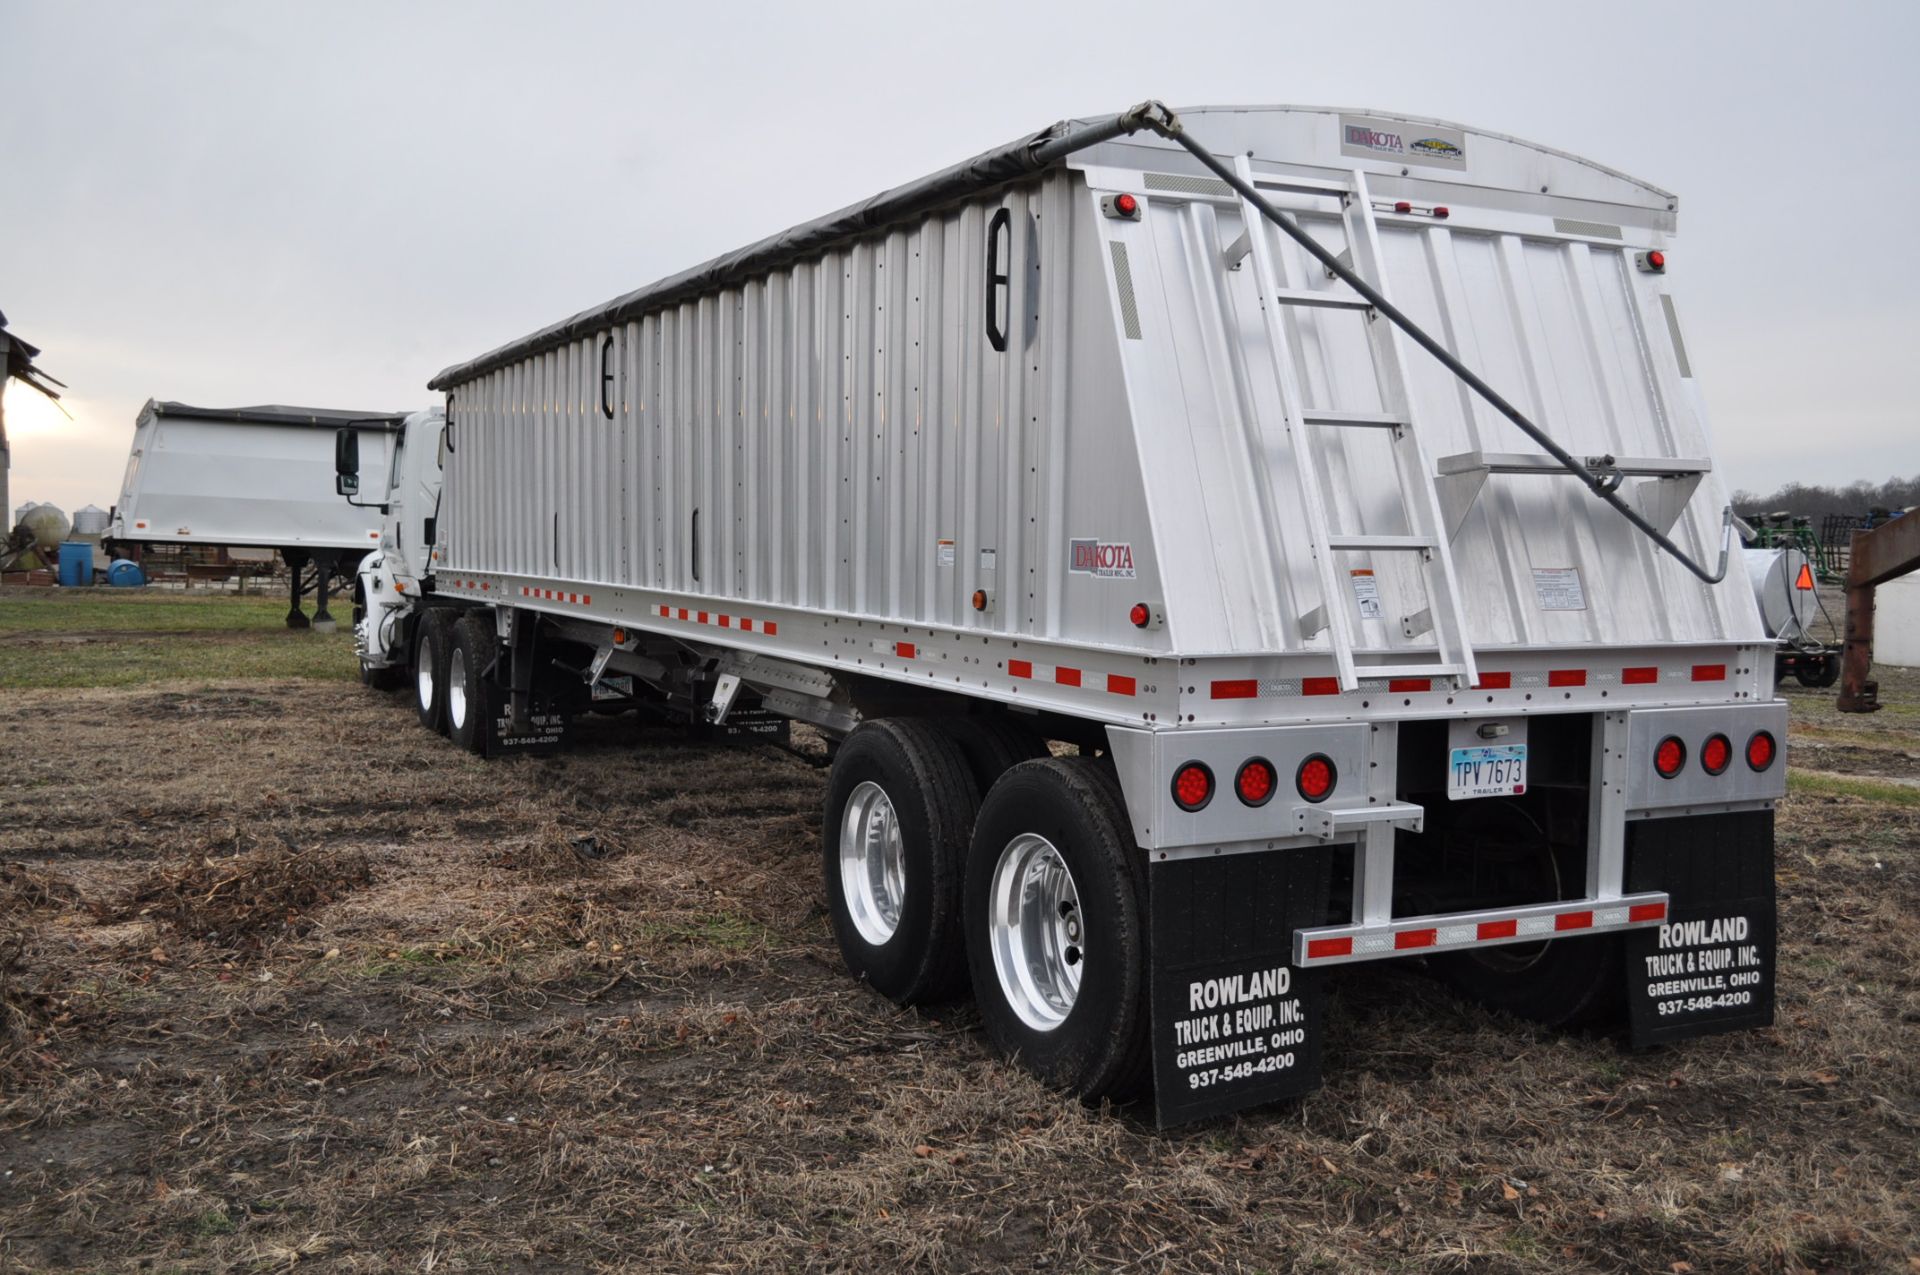 2012 36’ Dakota aluminum trailer, tandem axle, spring ride, 4 aluminum wheels, 11 R 22.5 tires - Image 2 of 4